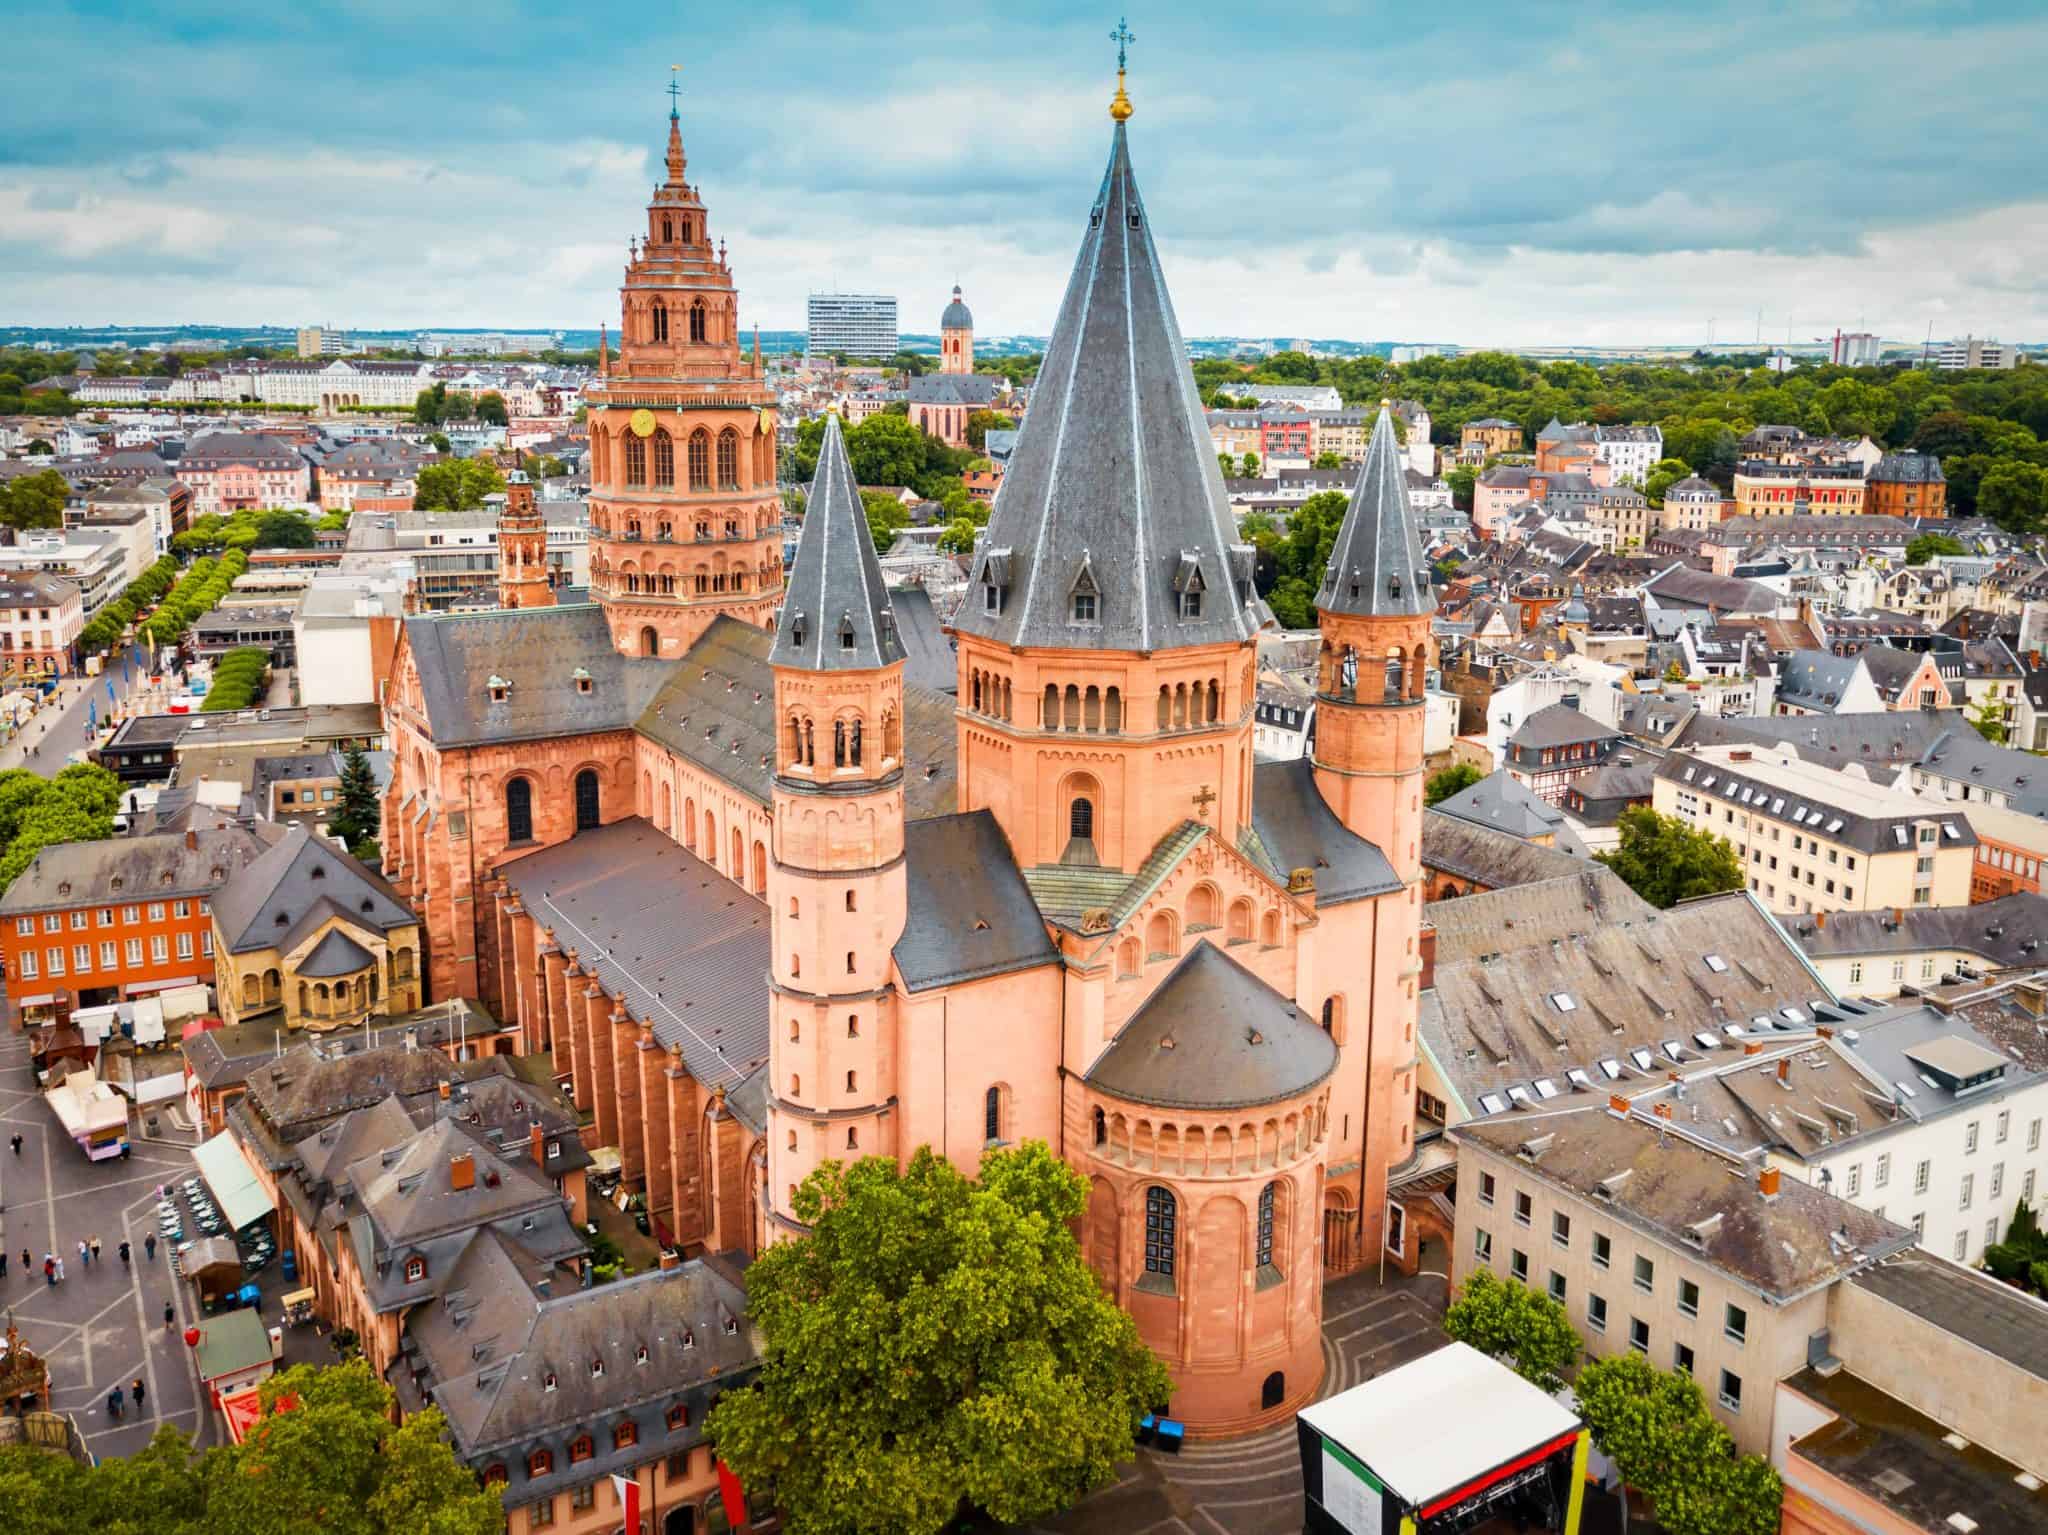 Immobilienverkauf in Mainz